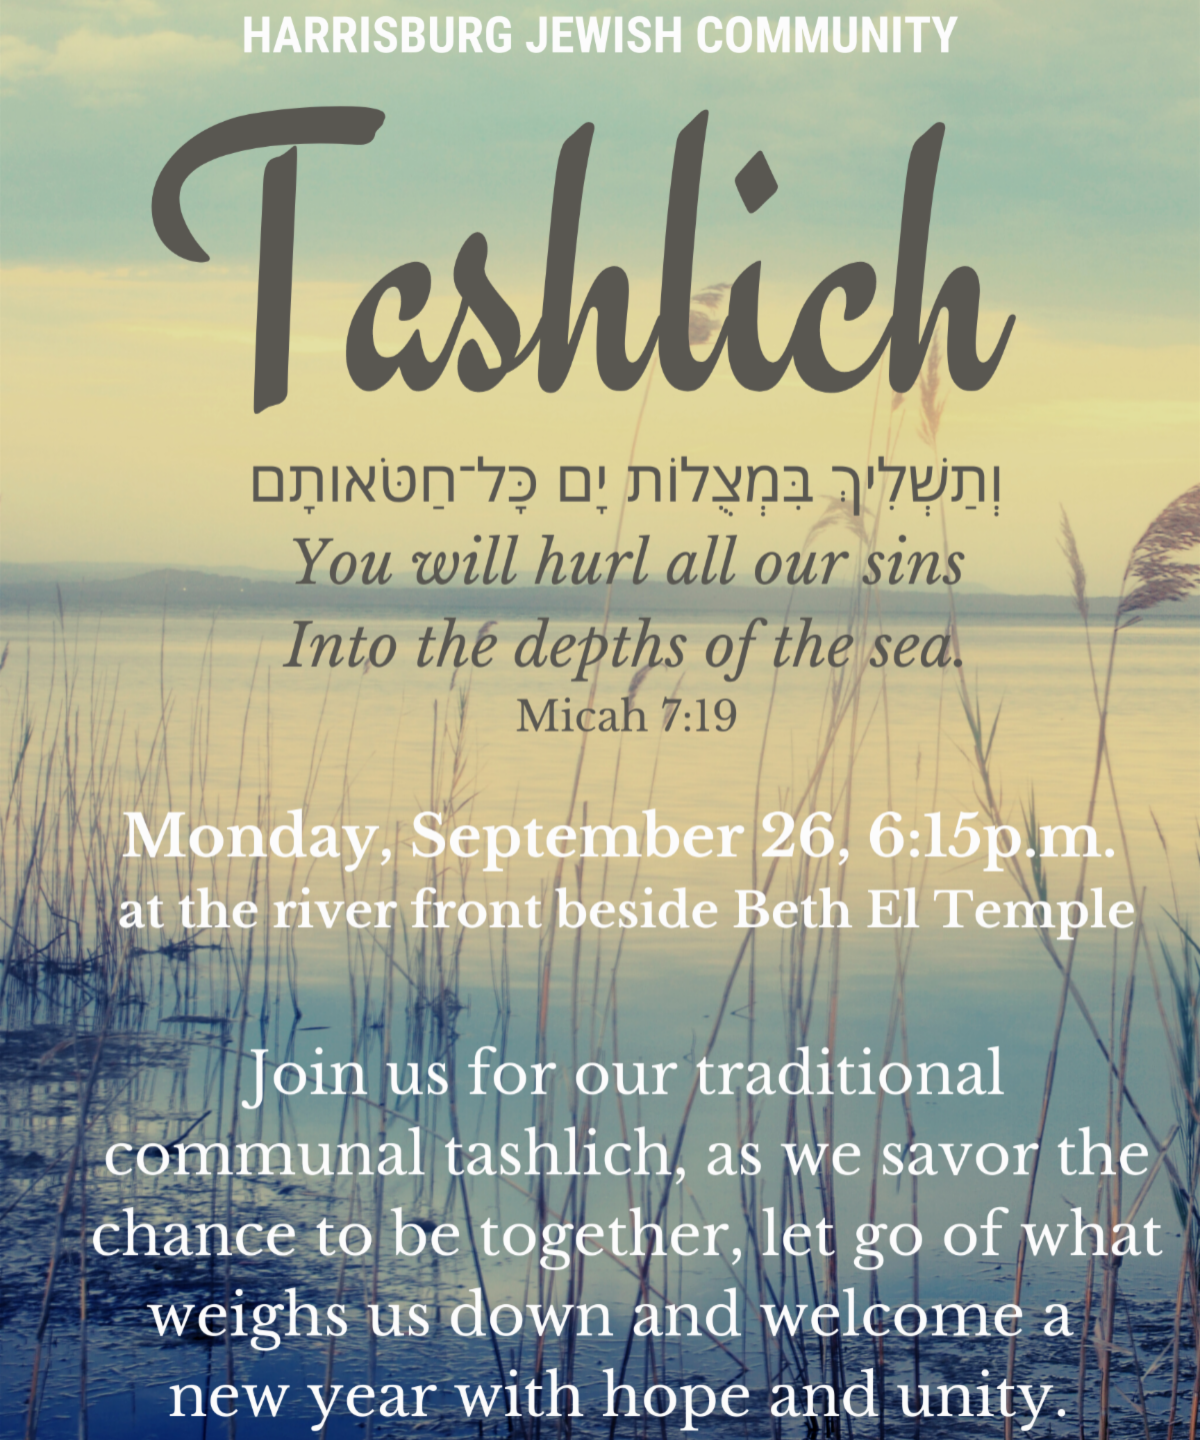 Community Tashlich at Beth El Temple